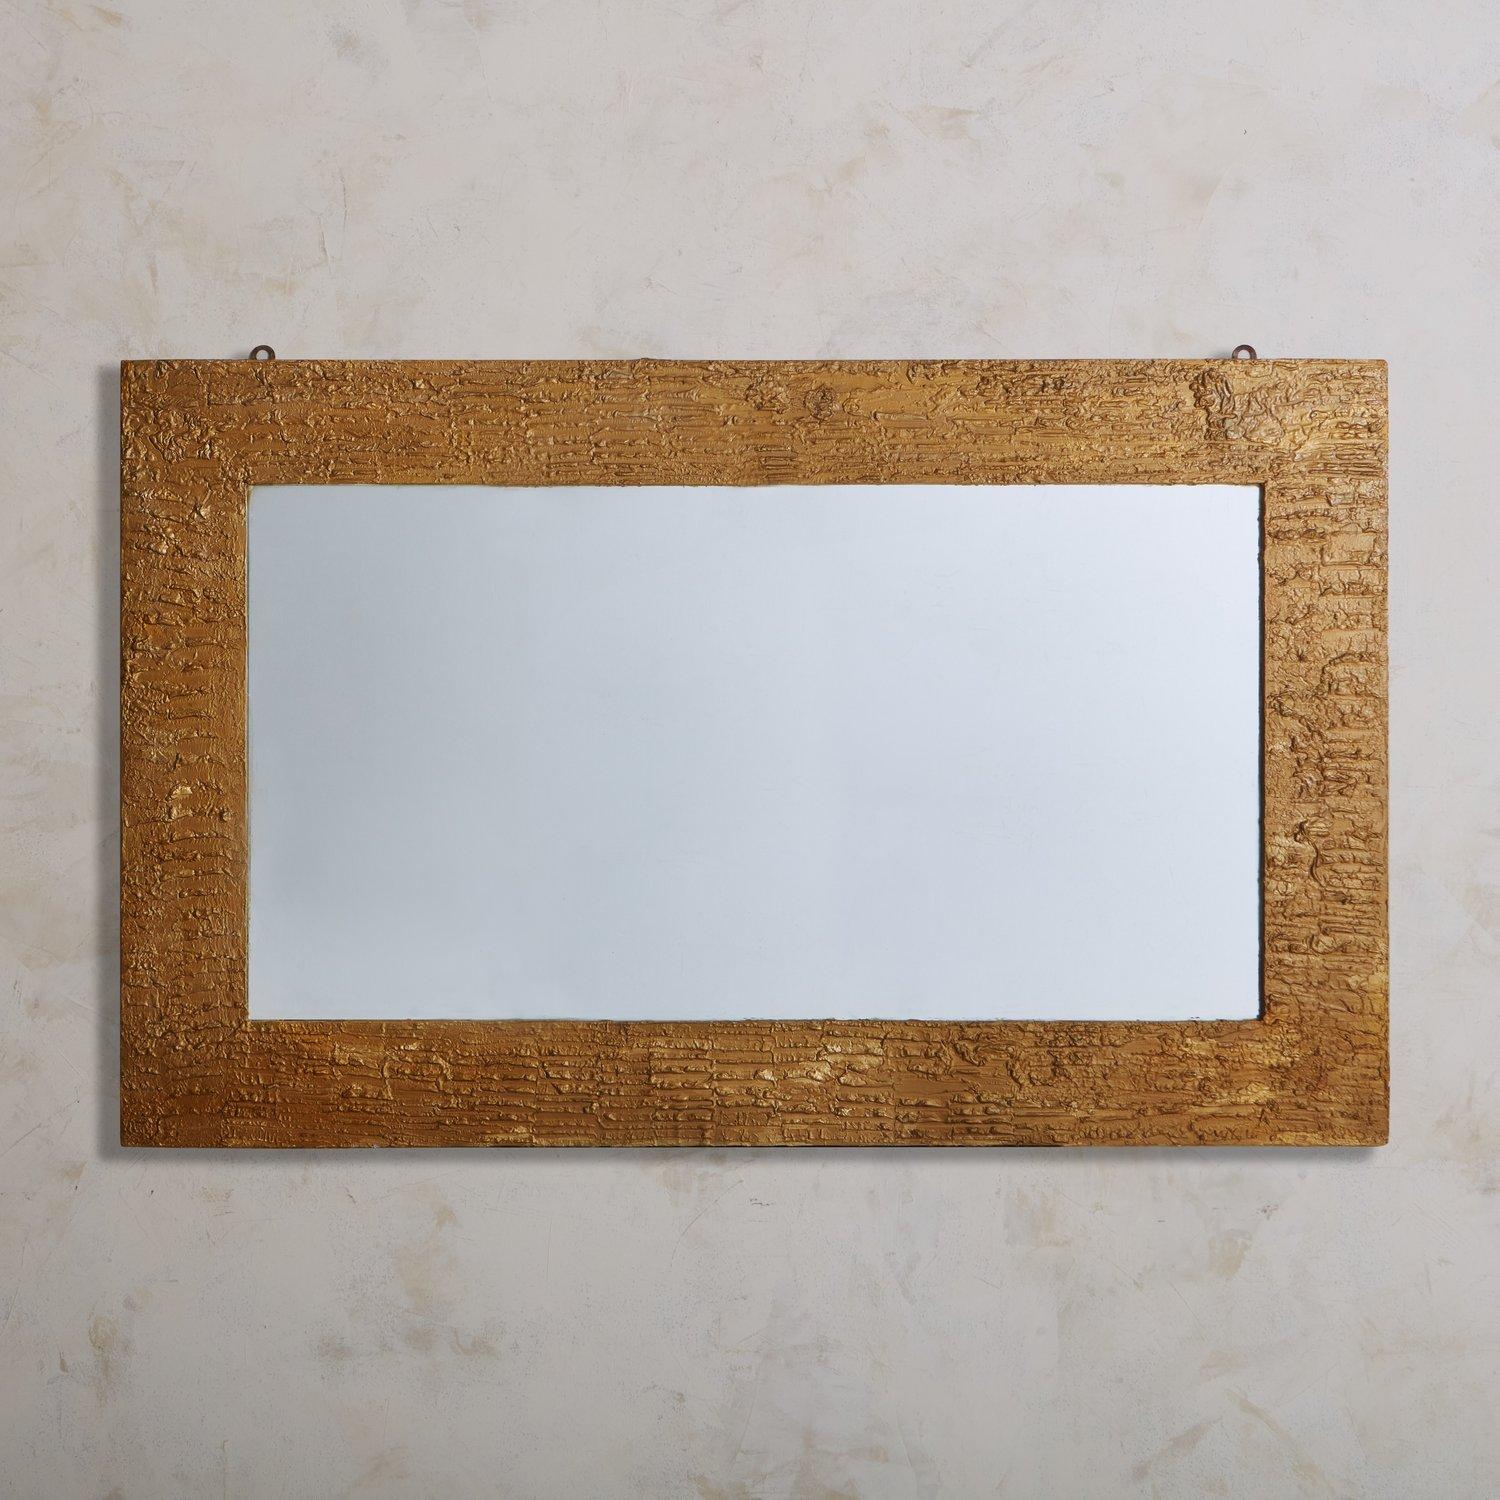 Miroir mural italien du milieu du siècle, doté d'un cadre rectangulaire en plâtre texturé et d'une finition dorée. Ce miroir est doté d'un support en bois et de ferrures pour le suspendre. Provenance : Italie, années 1970.

